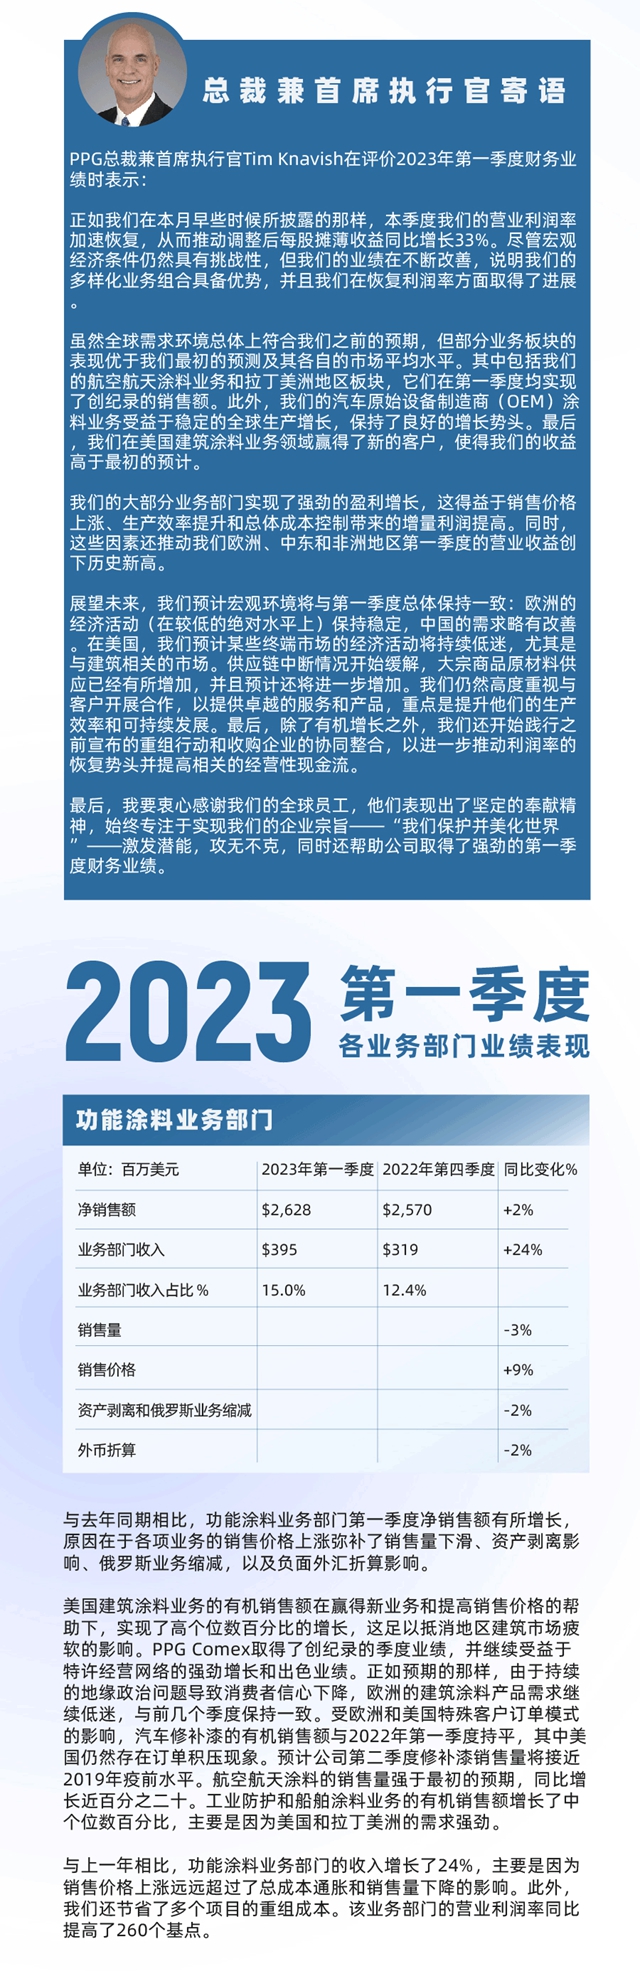 PPG发布2023年第一季度财报